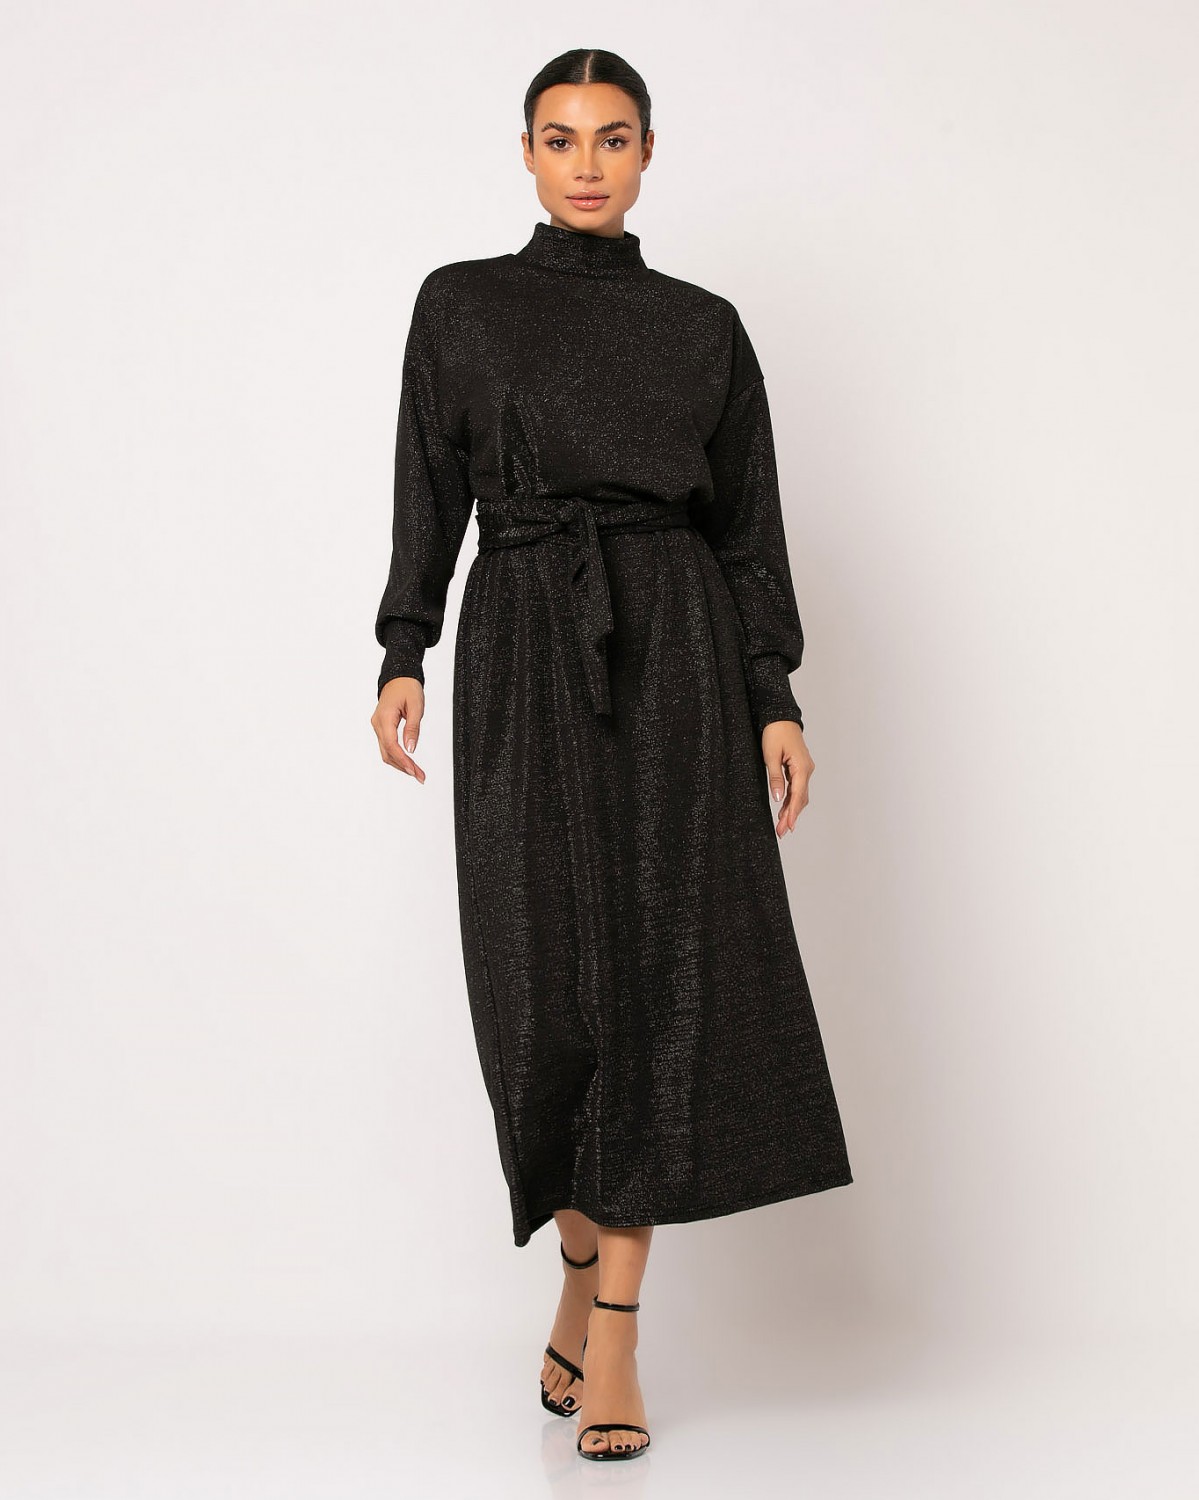 Φόρεμα maxi μακρυμάνικο με κλειστό λαιμό λούρεξ Μαύρο 